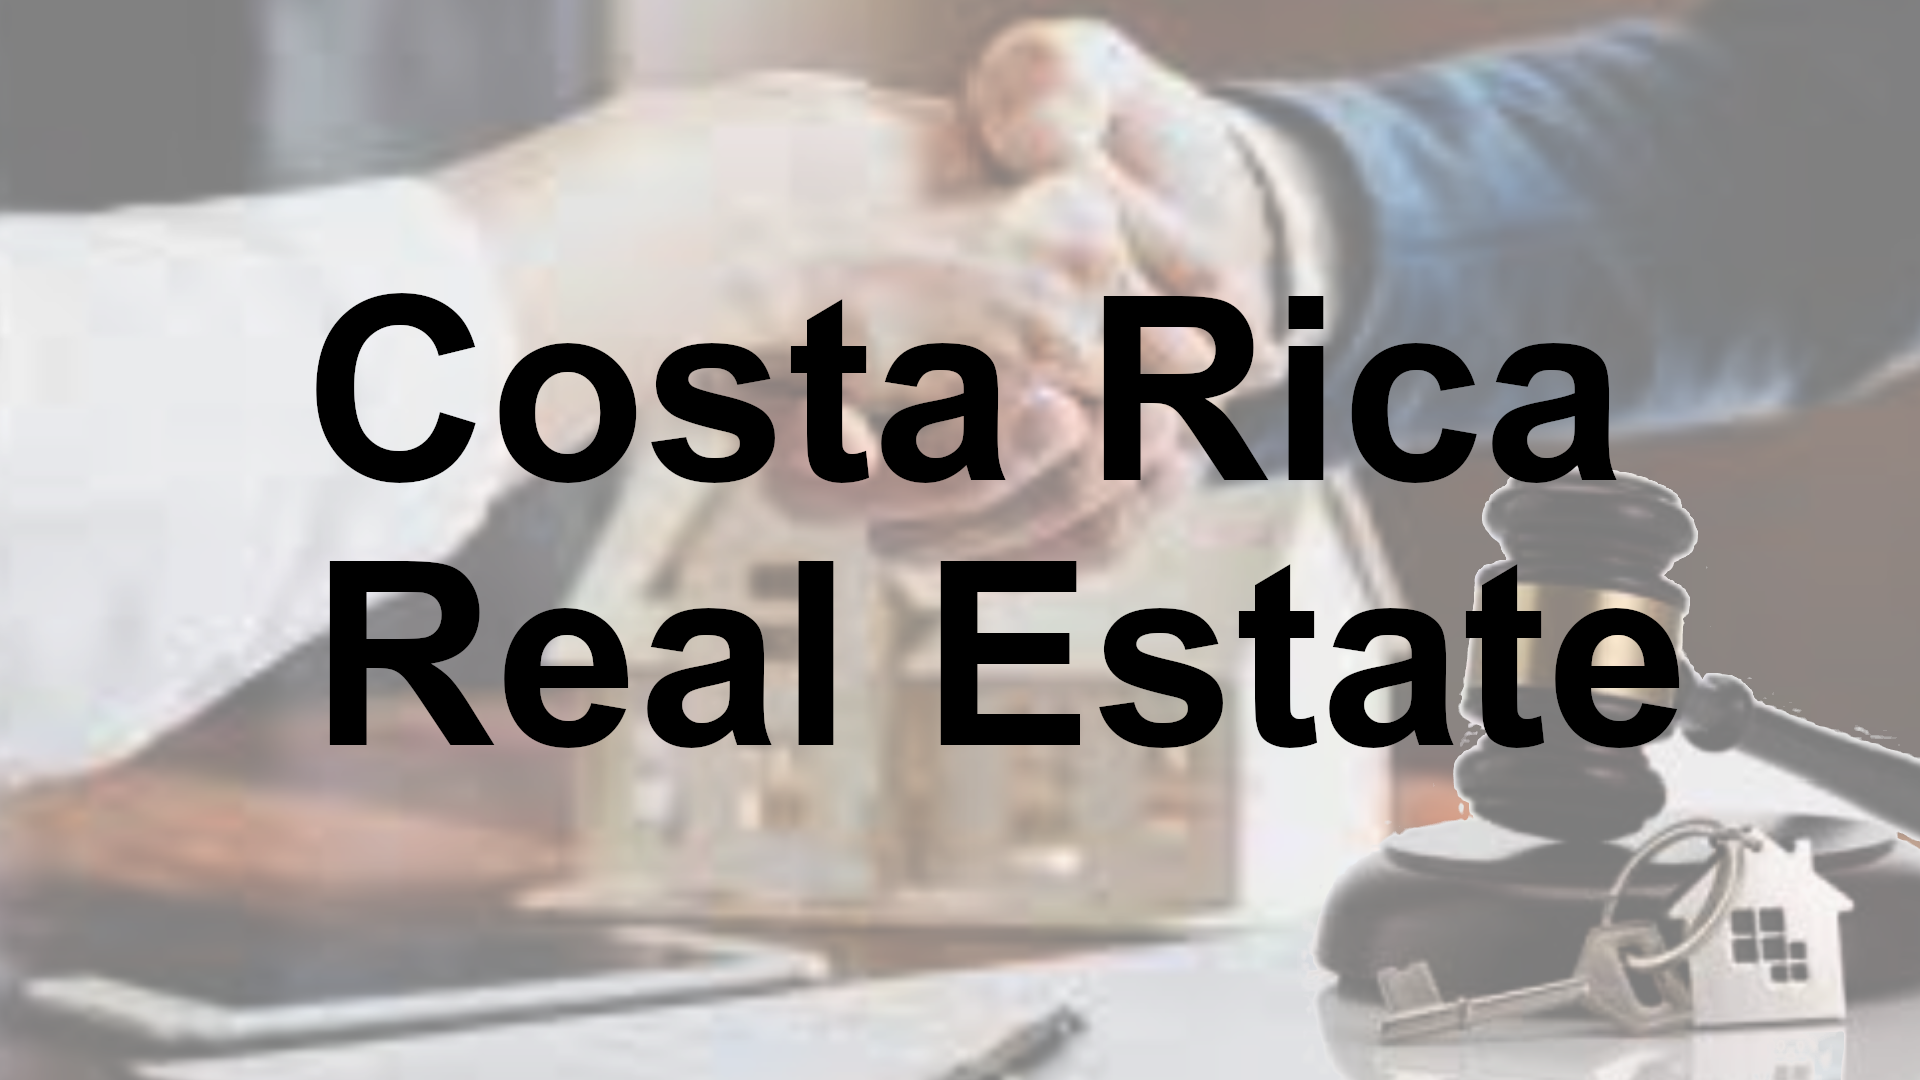 Costa Rica Real Estate Law